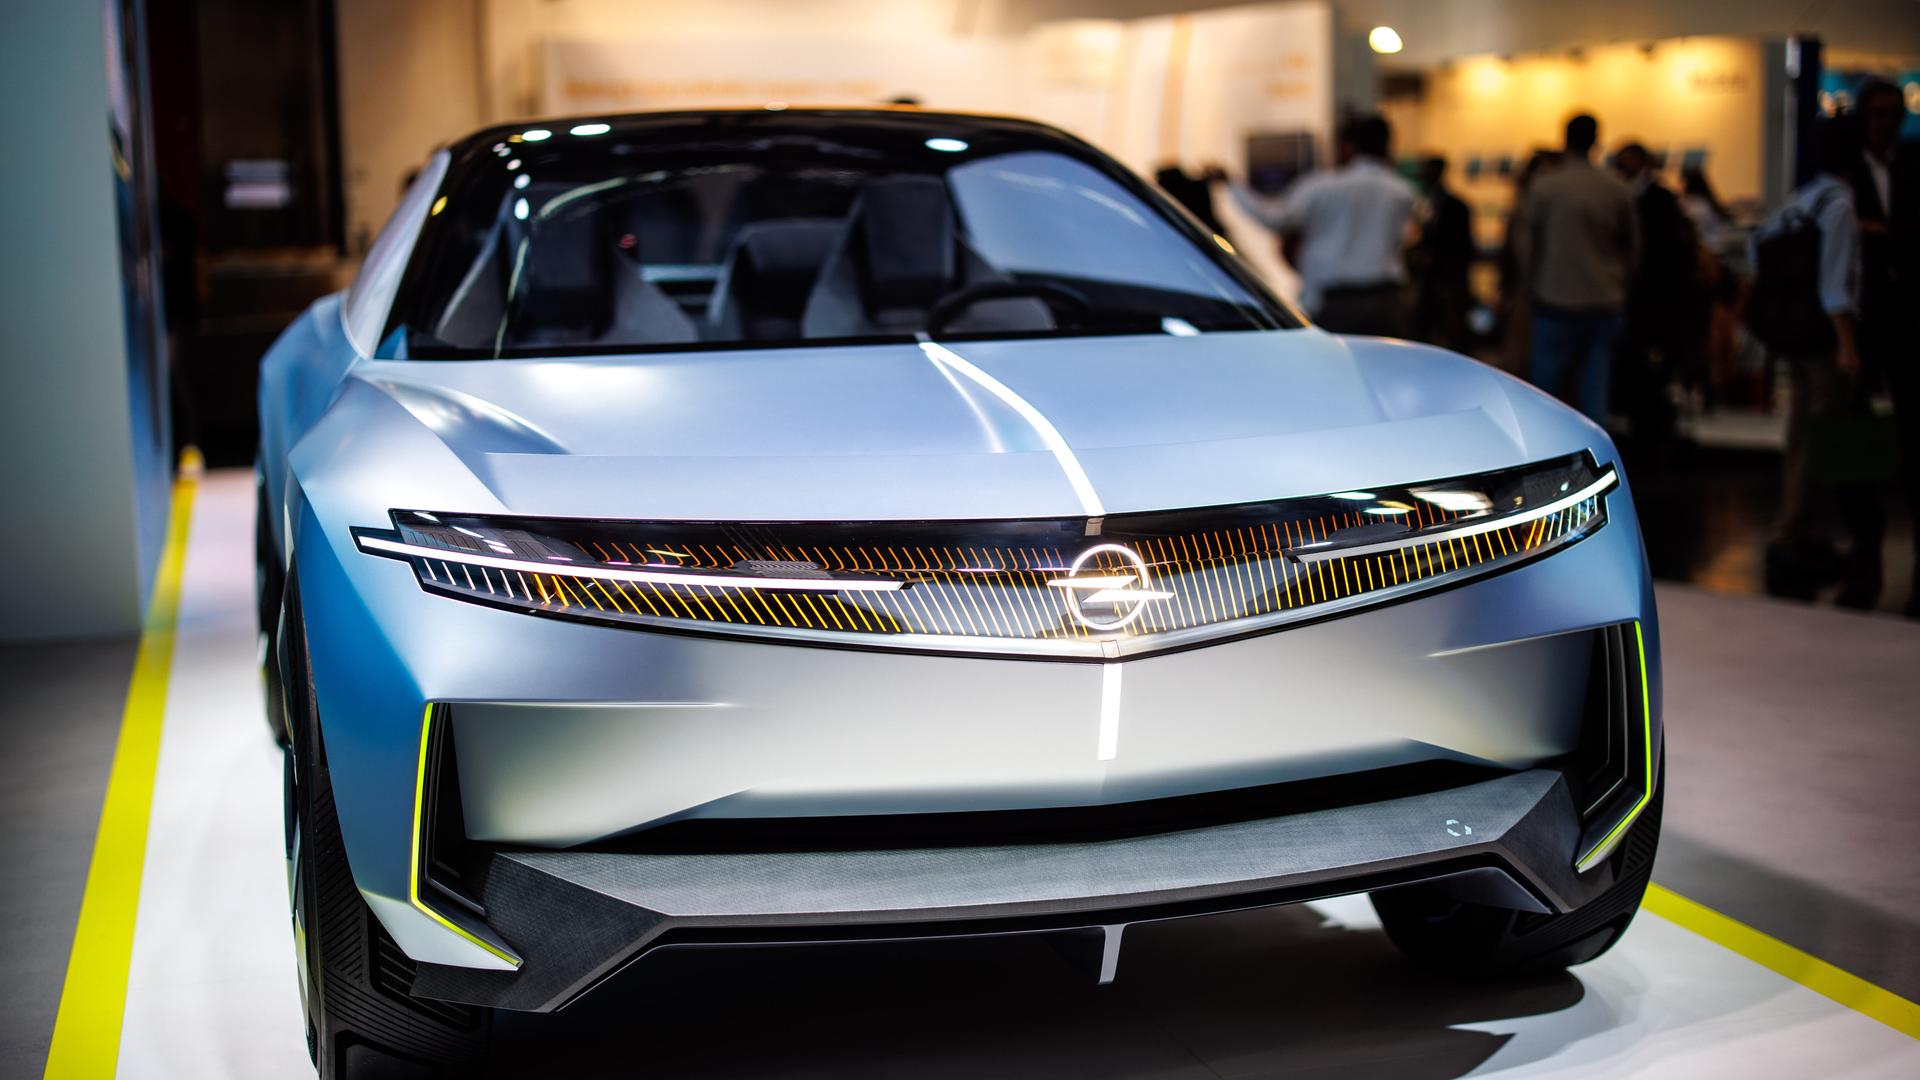 Das elektrische Konzeptauto "Experimental" von Opel ist beim Pressetag der Auto- und Verkehrsmesse IAA in einer Halle der Messe München zu sehen.